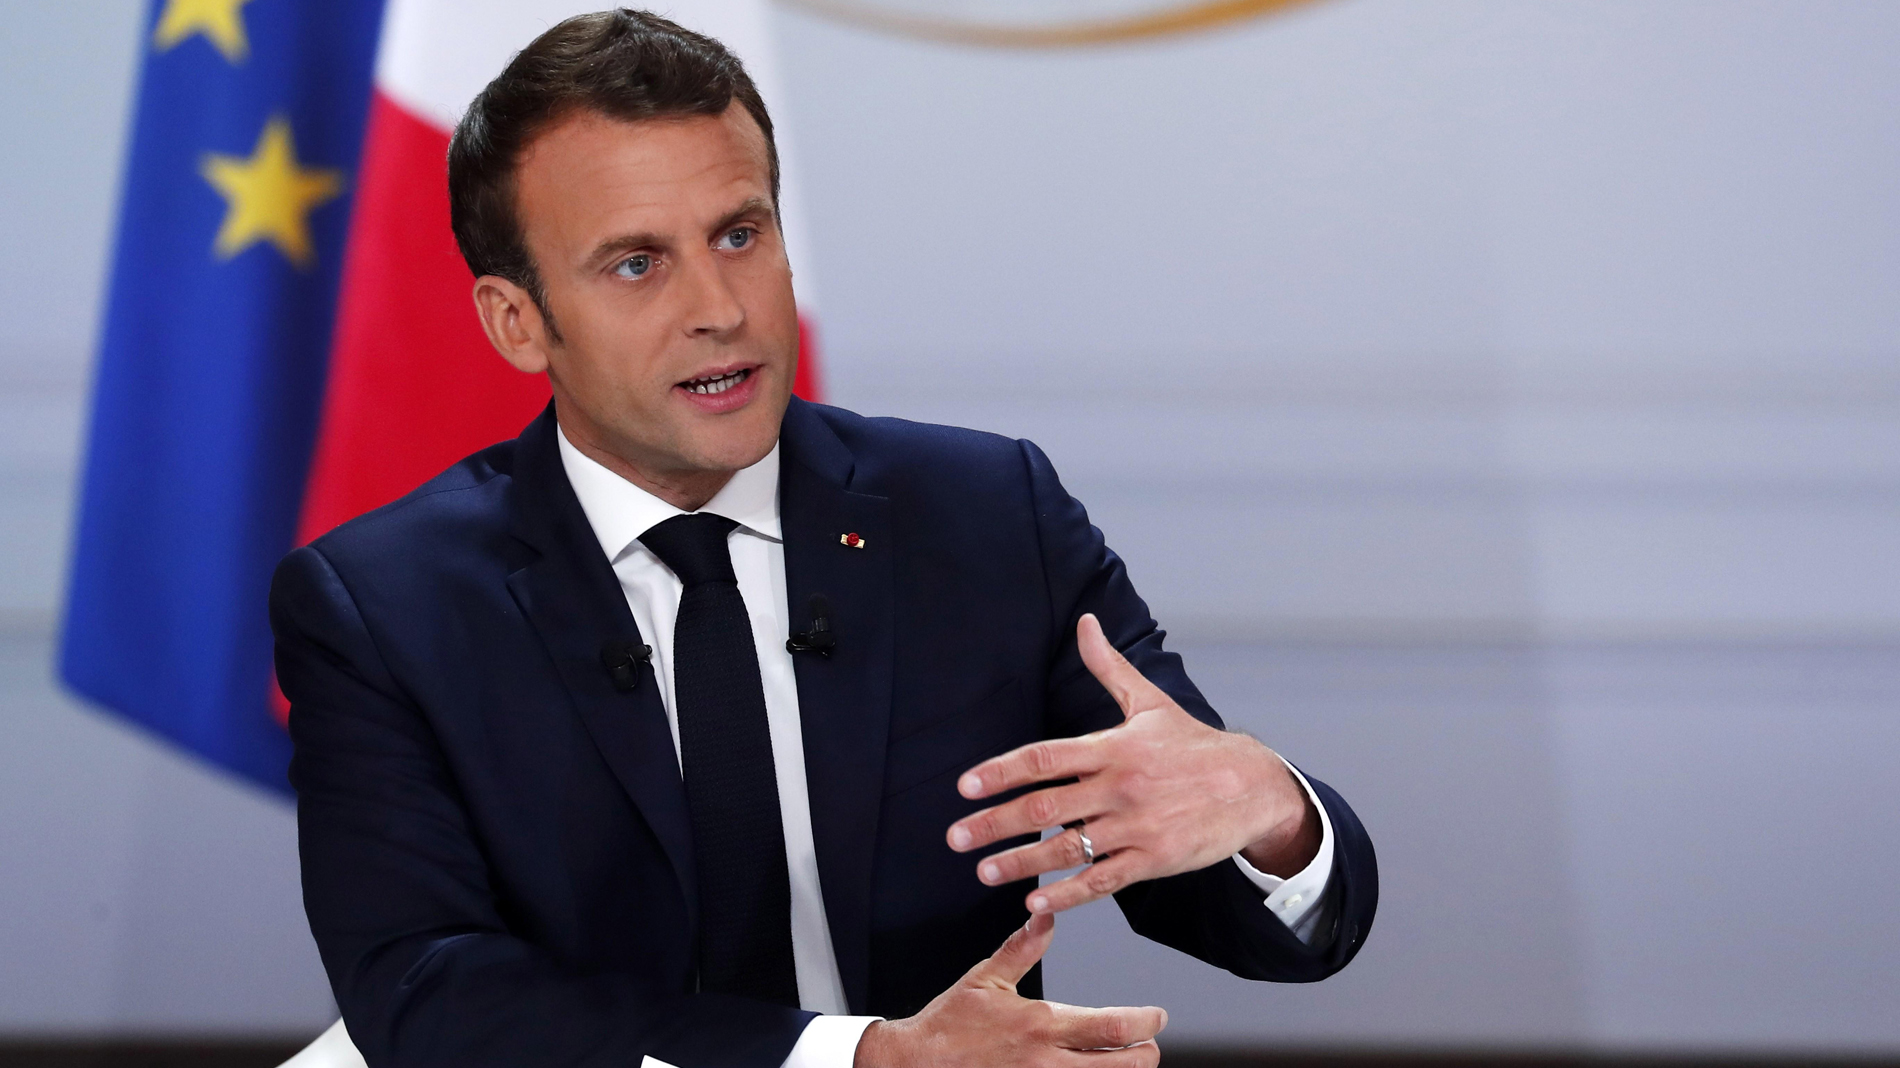 Macron promete bajar el impuesto de la renta y más descentralización en Francia como respuesta a los 'chalecos amarillos